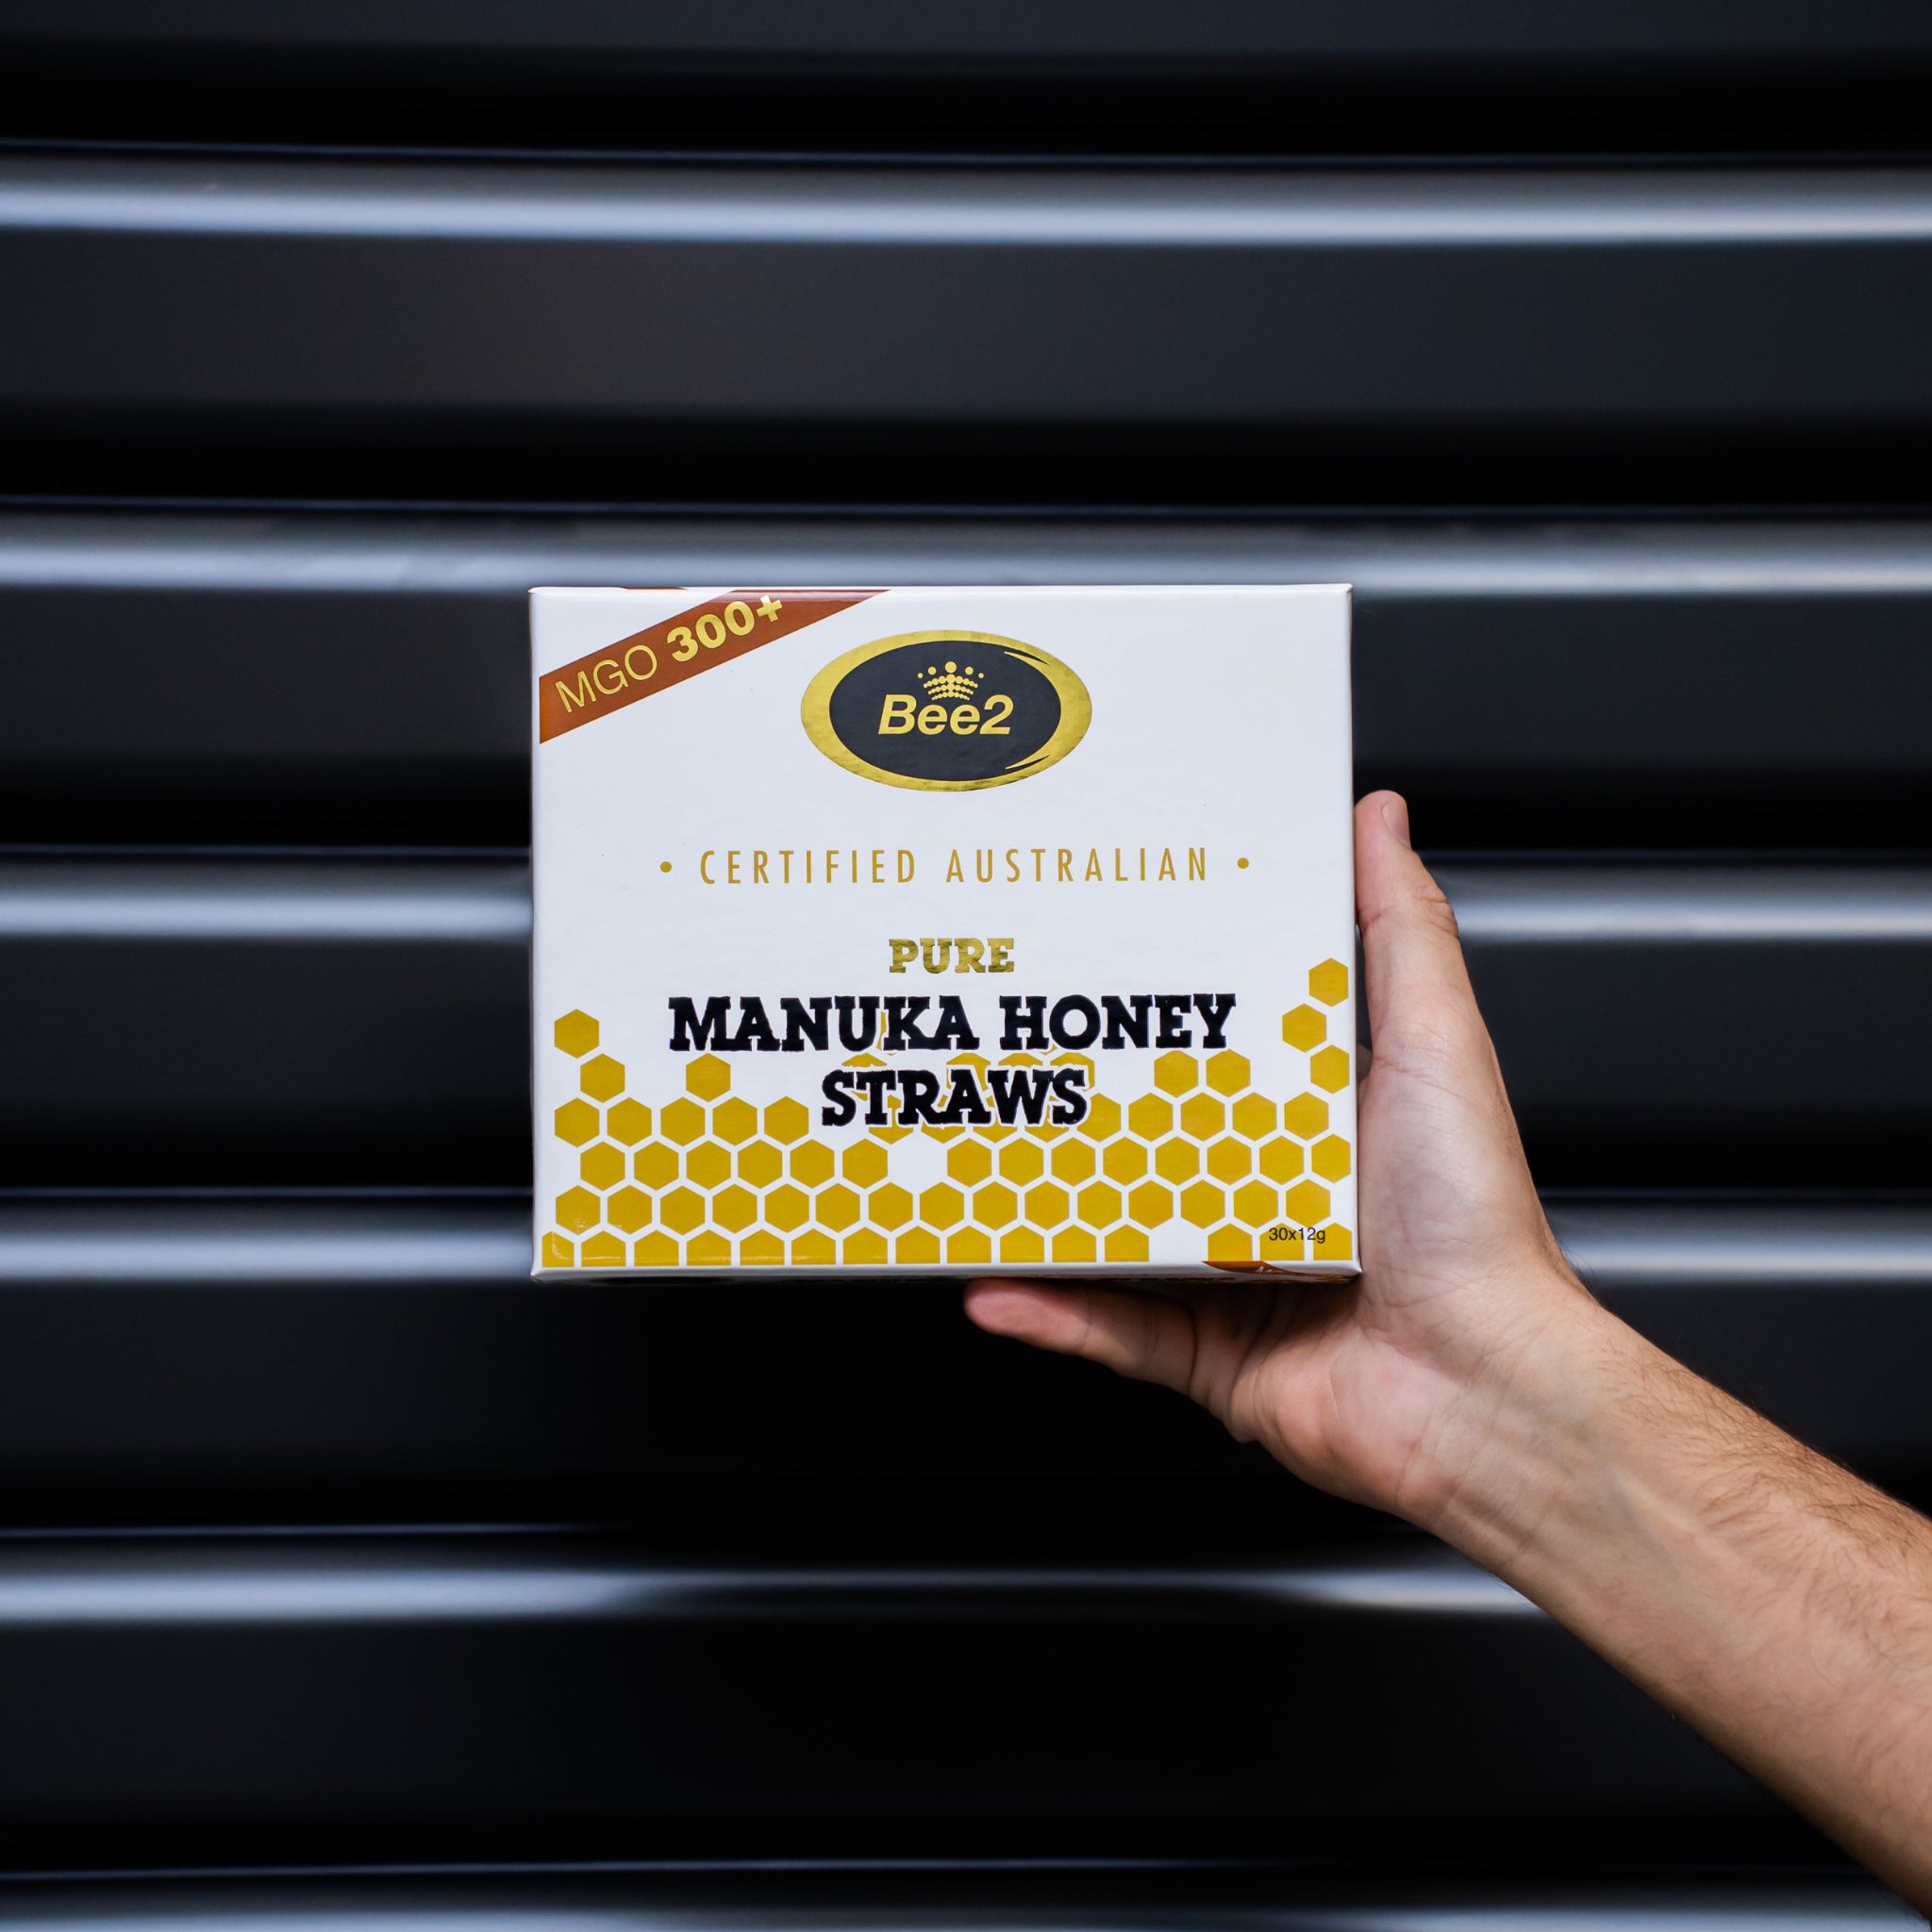 Bee2 Manuka Honey Straws MGO 300+